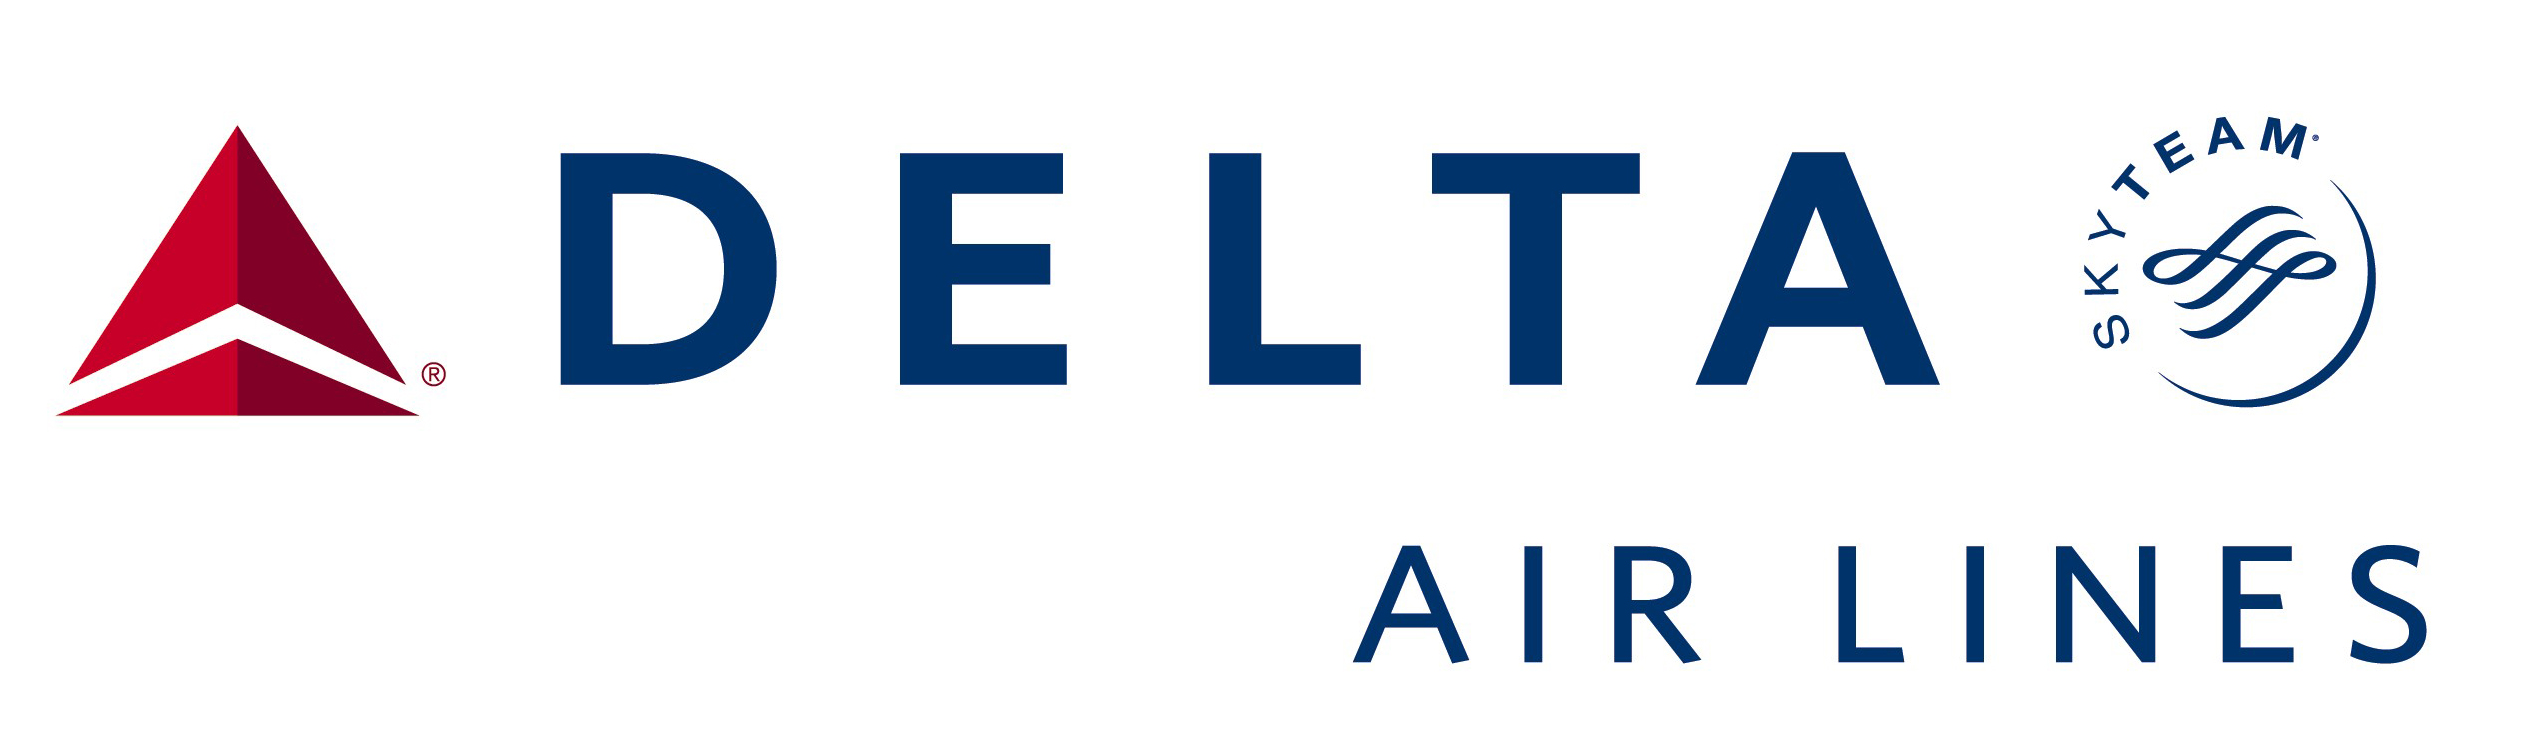 Logo_DeltaAirlines